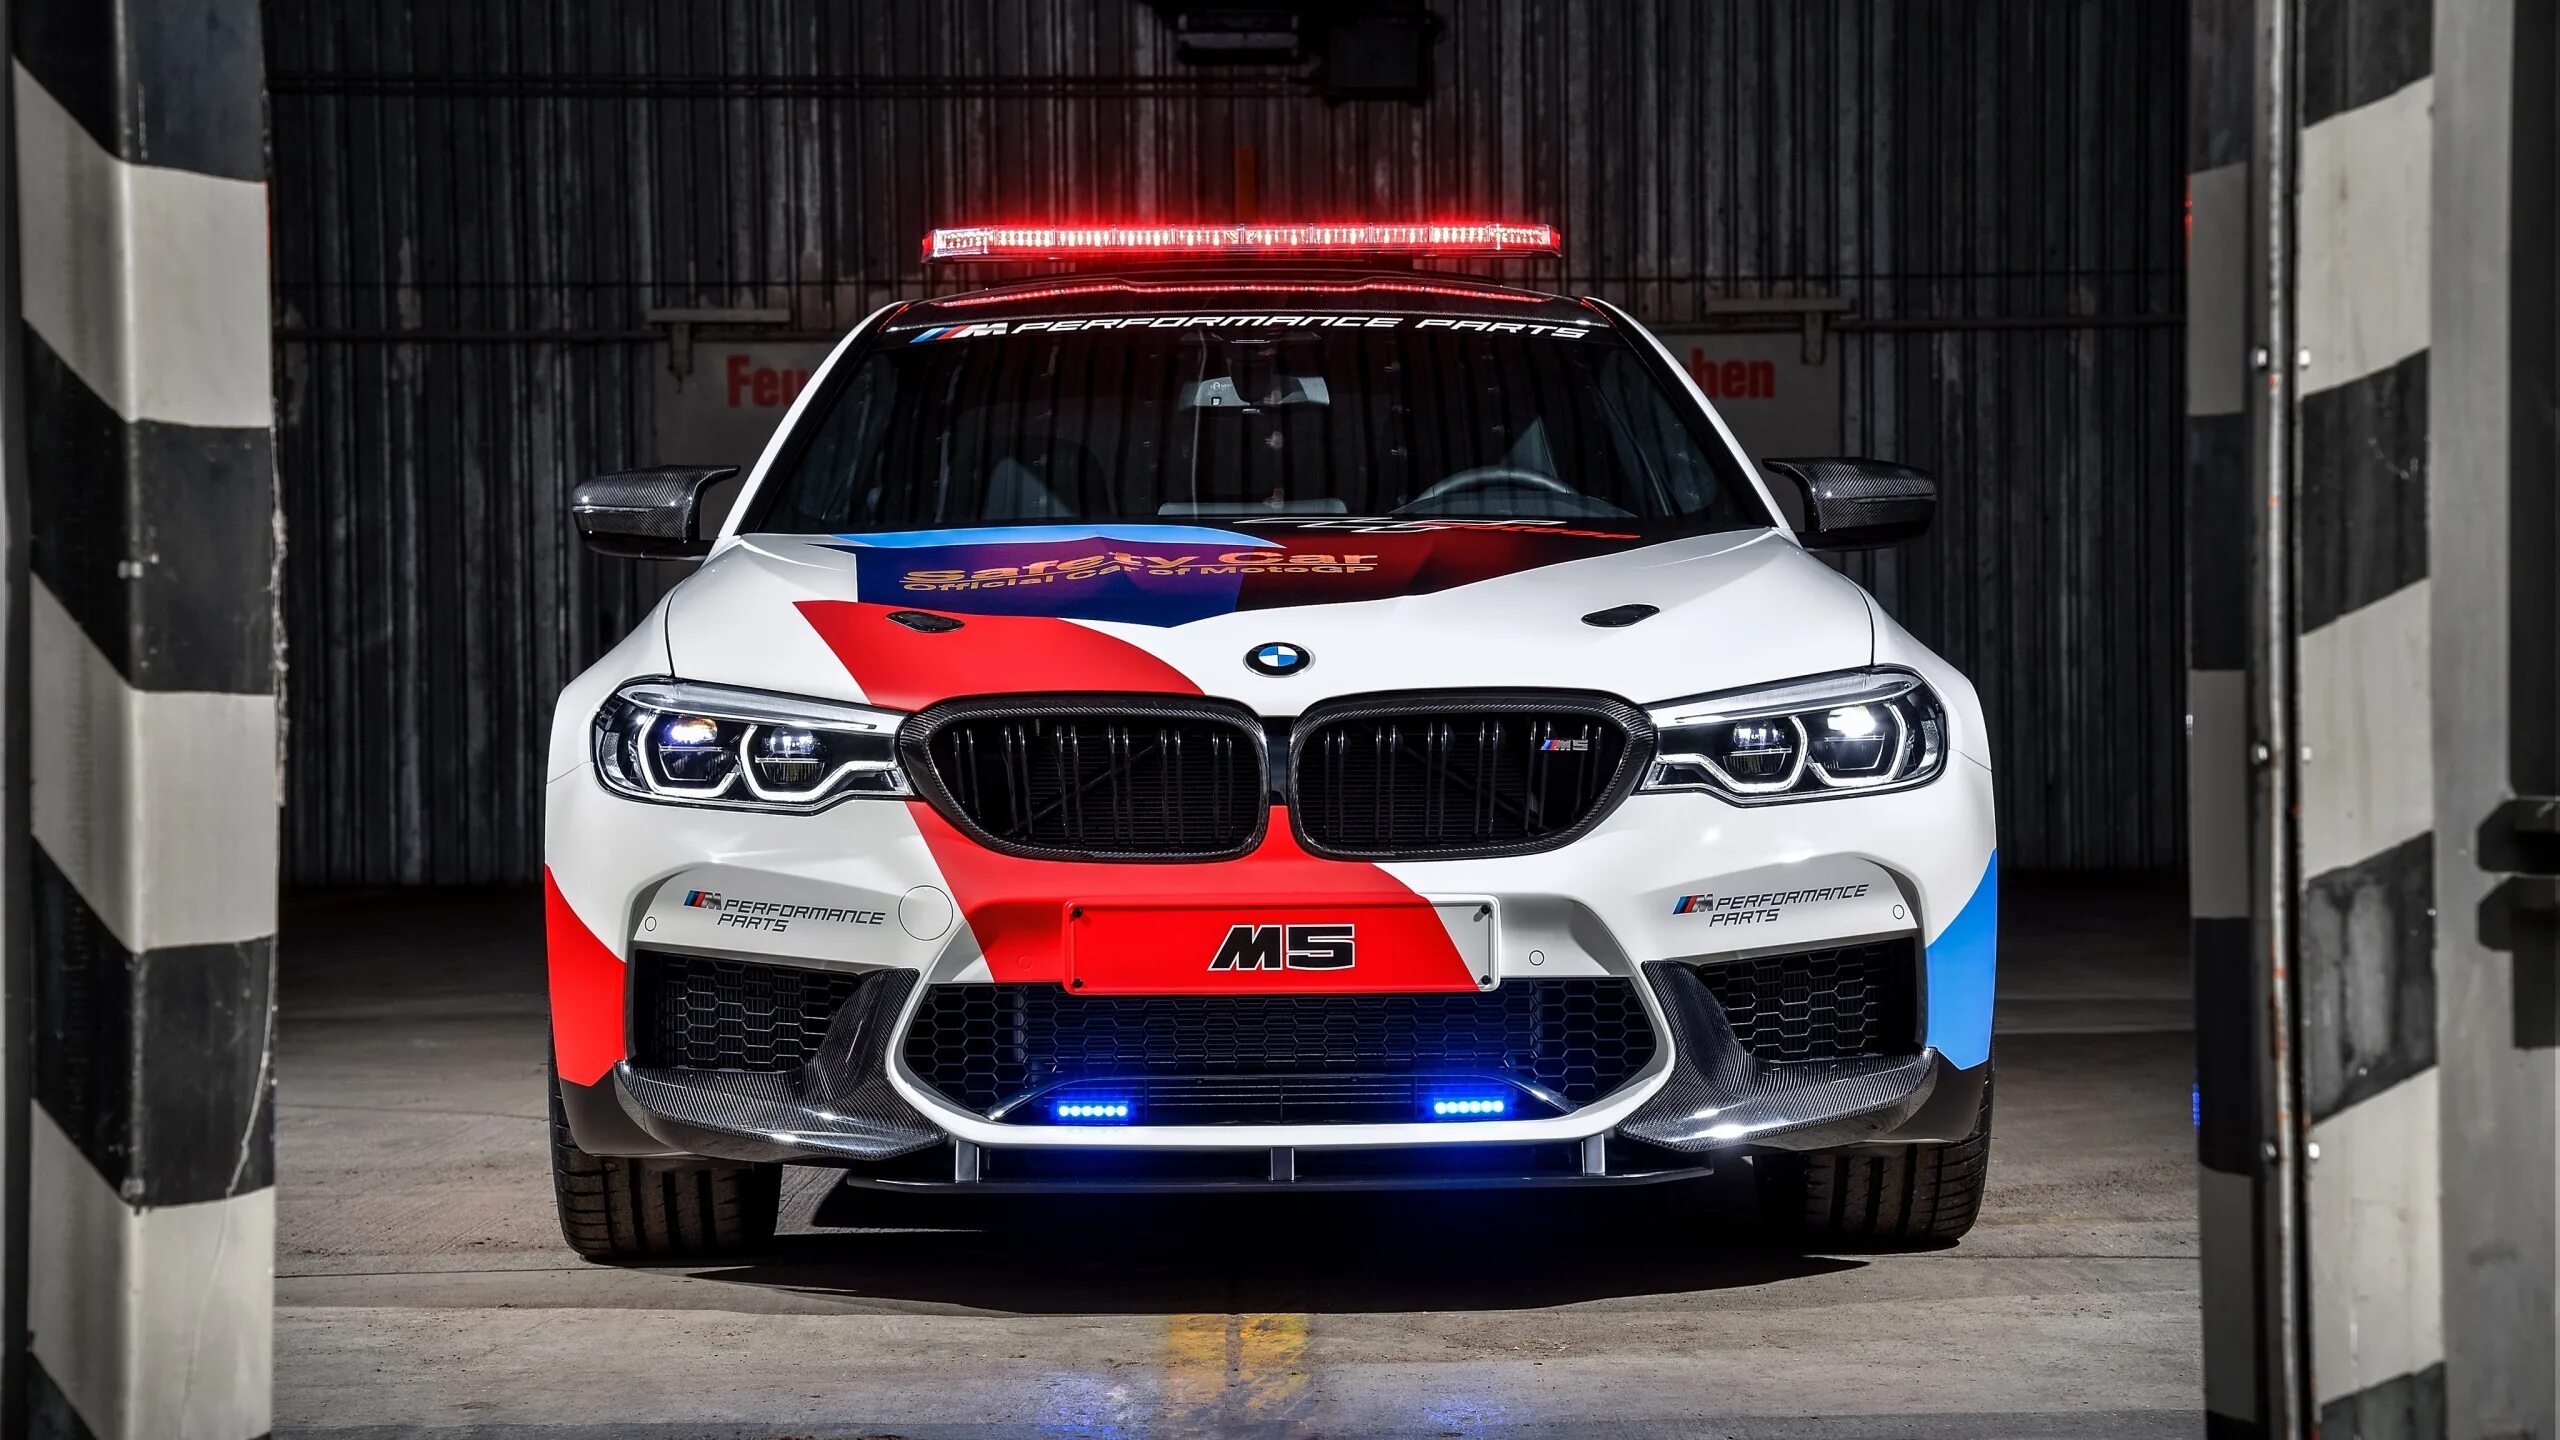 Bmw m tech. BMW m5 f90 Полицейская. BMW m5 f90 Safety car. BMW m5 f90 2015. BMW m5 f90 m Performance.